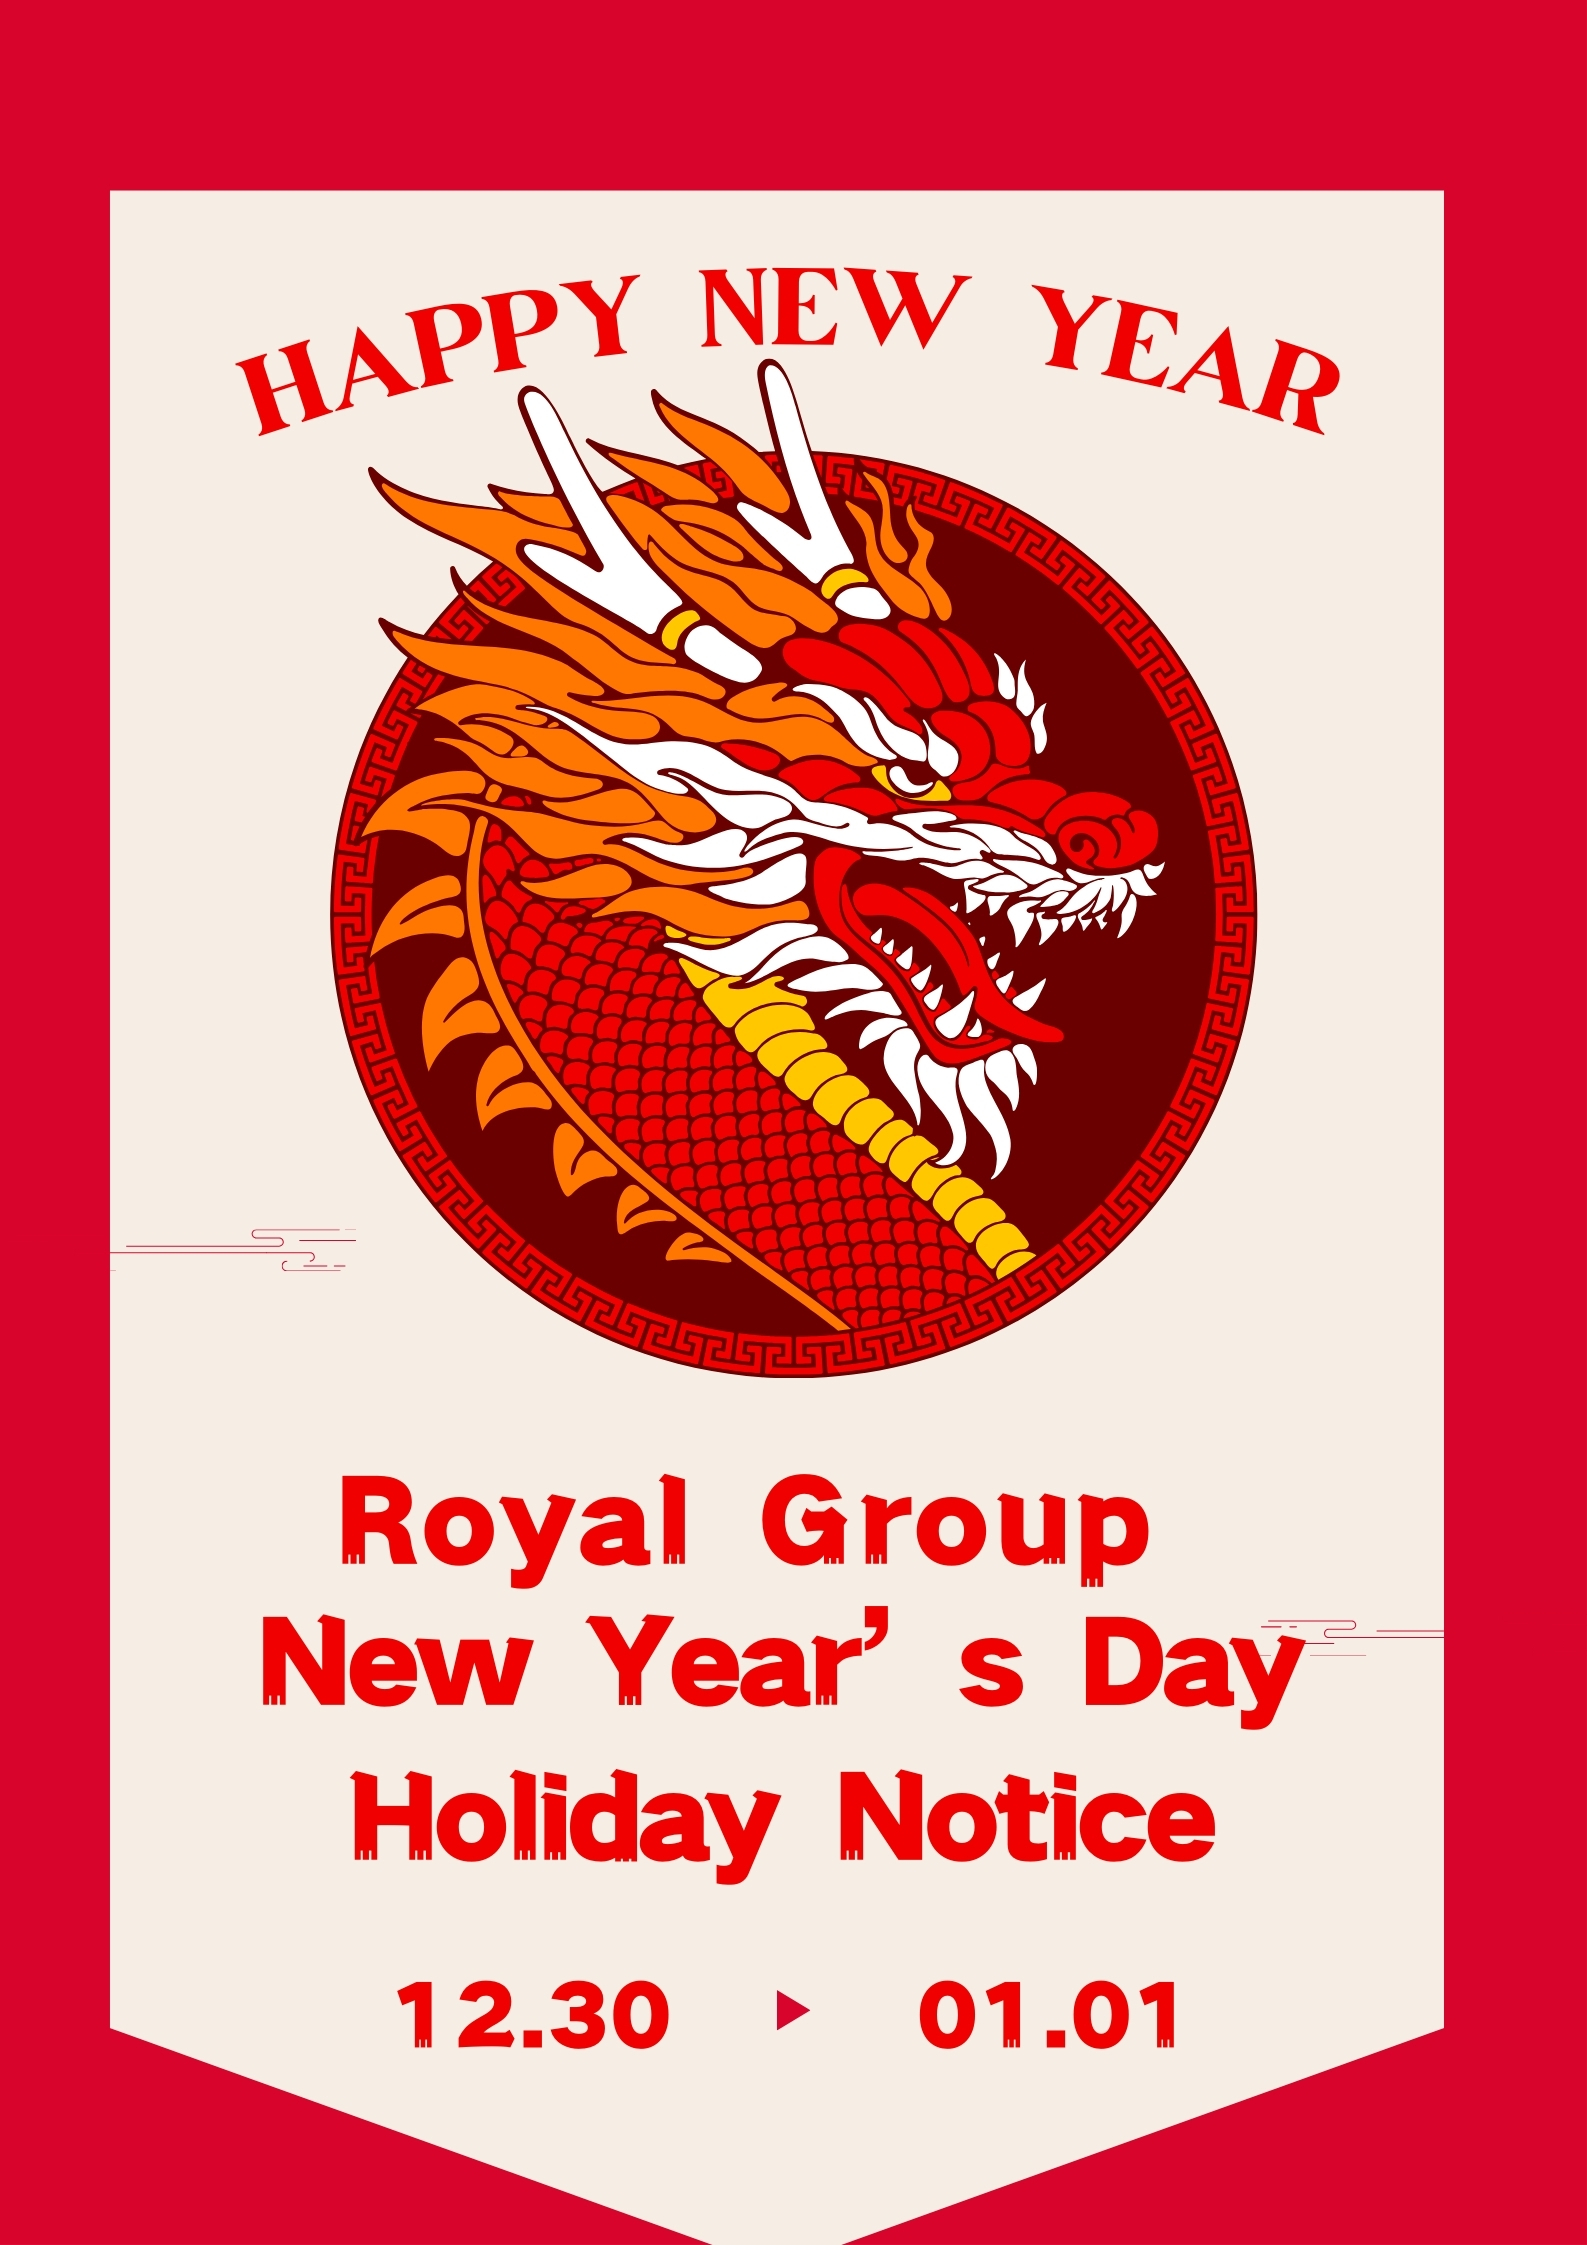 Obvestilo o novoletnih praznikih skupine Royal Group